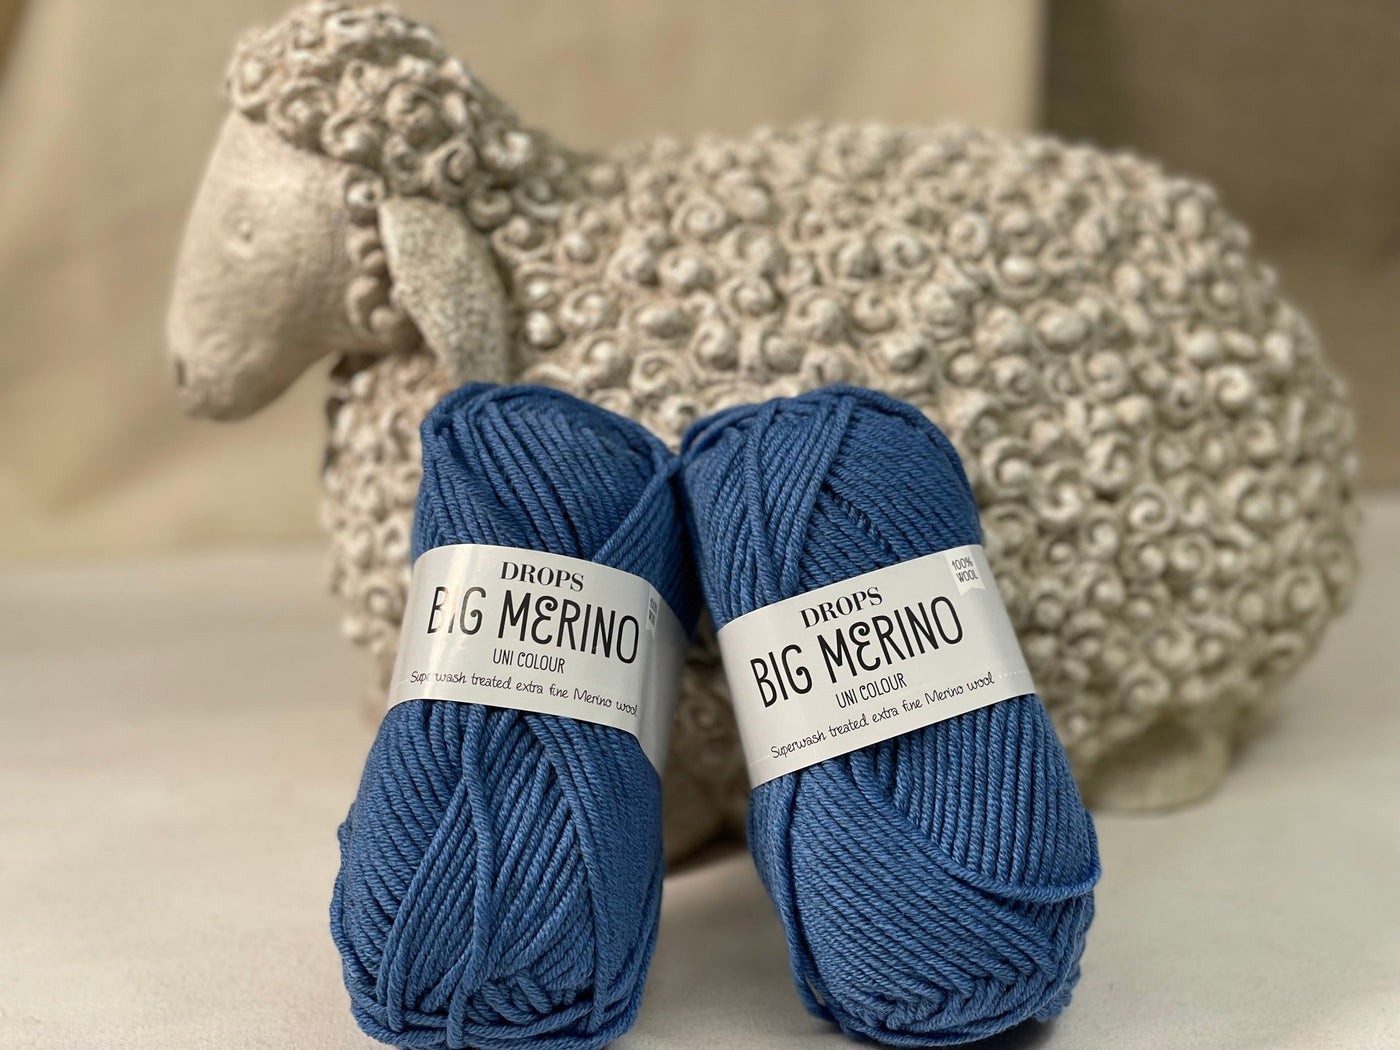 DROPS Big Merino - Superwash treated extra fine merino wool